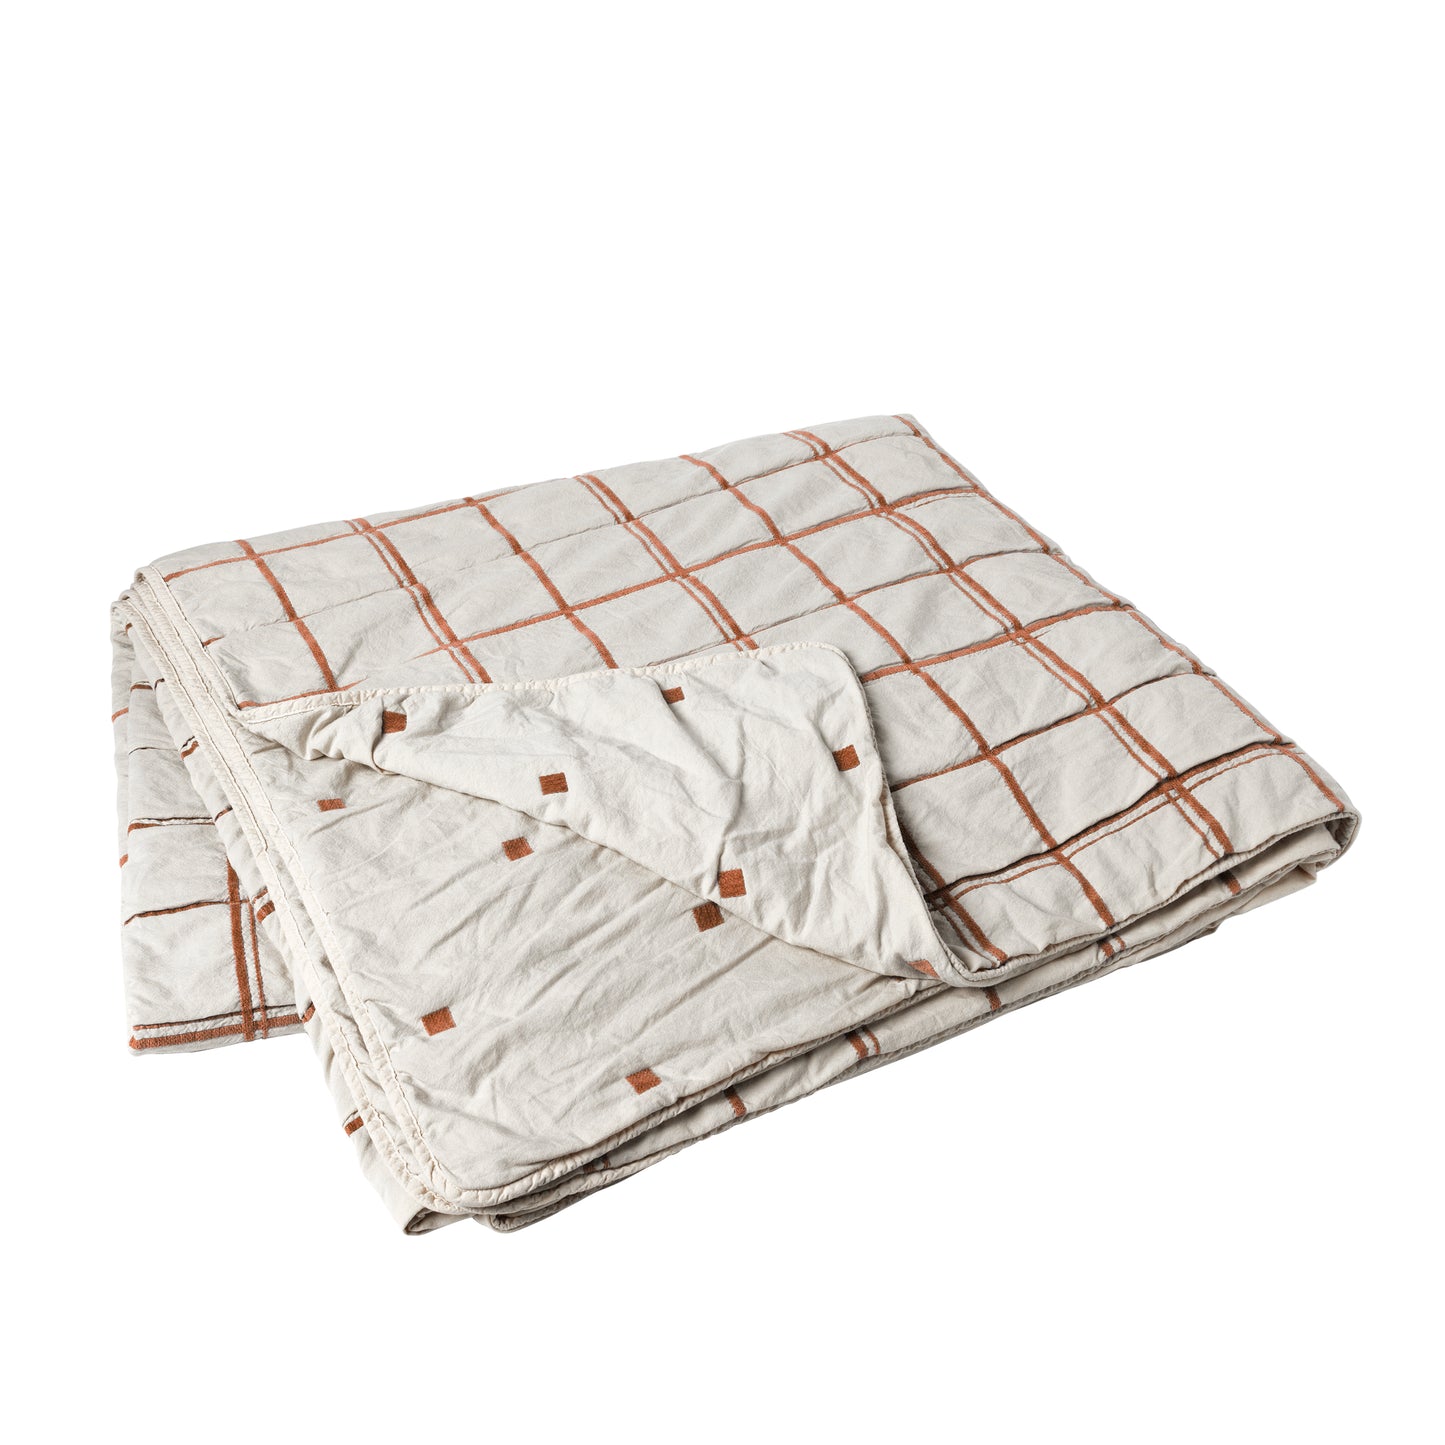 Broste Copenhagen Tove Bedspread in Meerkat Brown